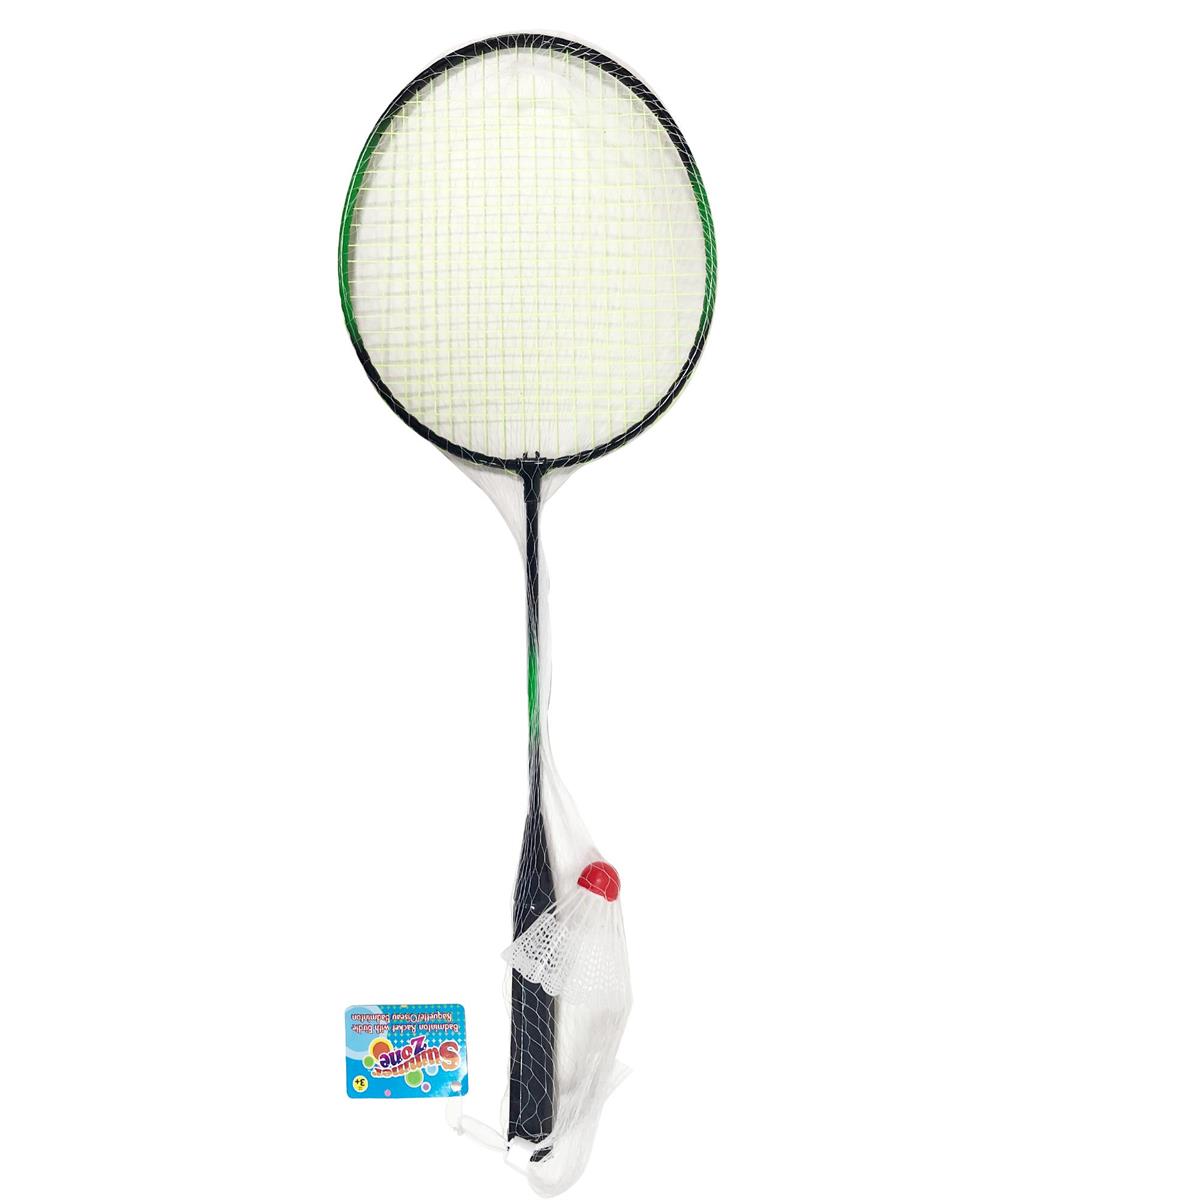 Summer Zone Badminton Racket with Birdie in Net Bag, 23'', hangtag